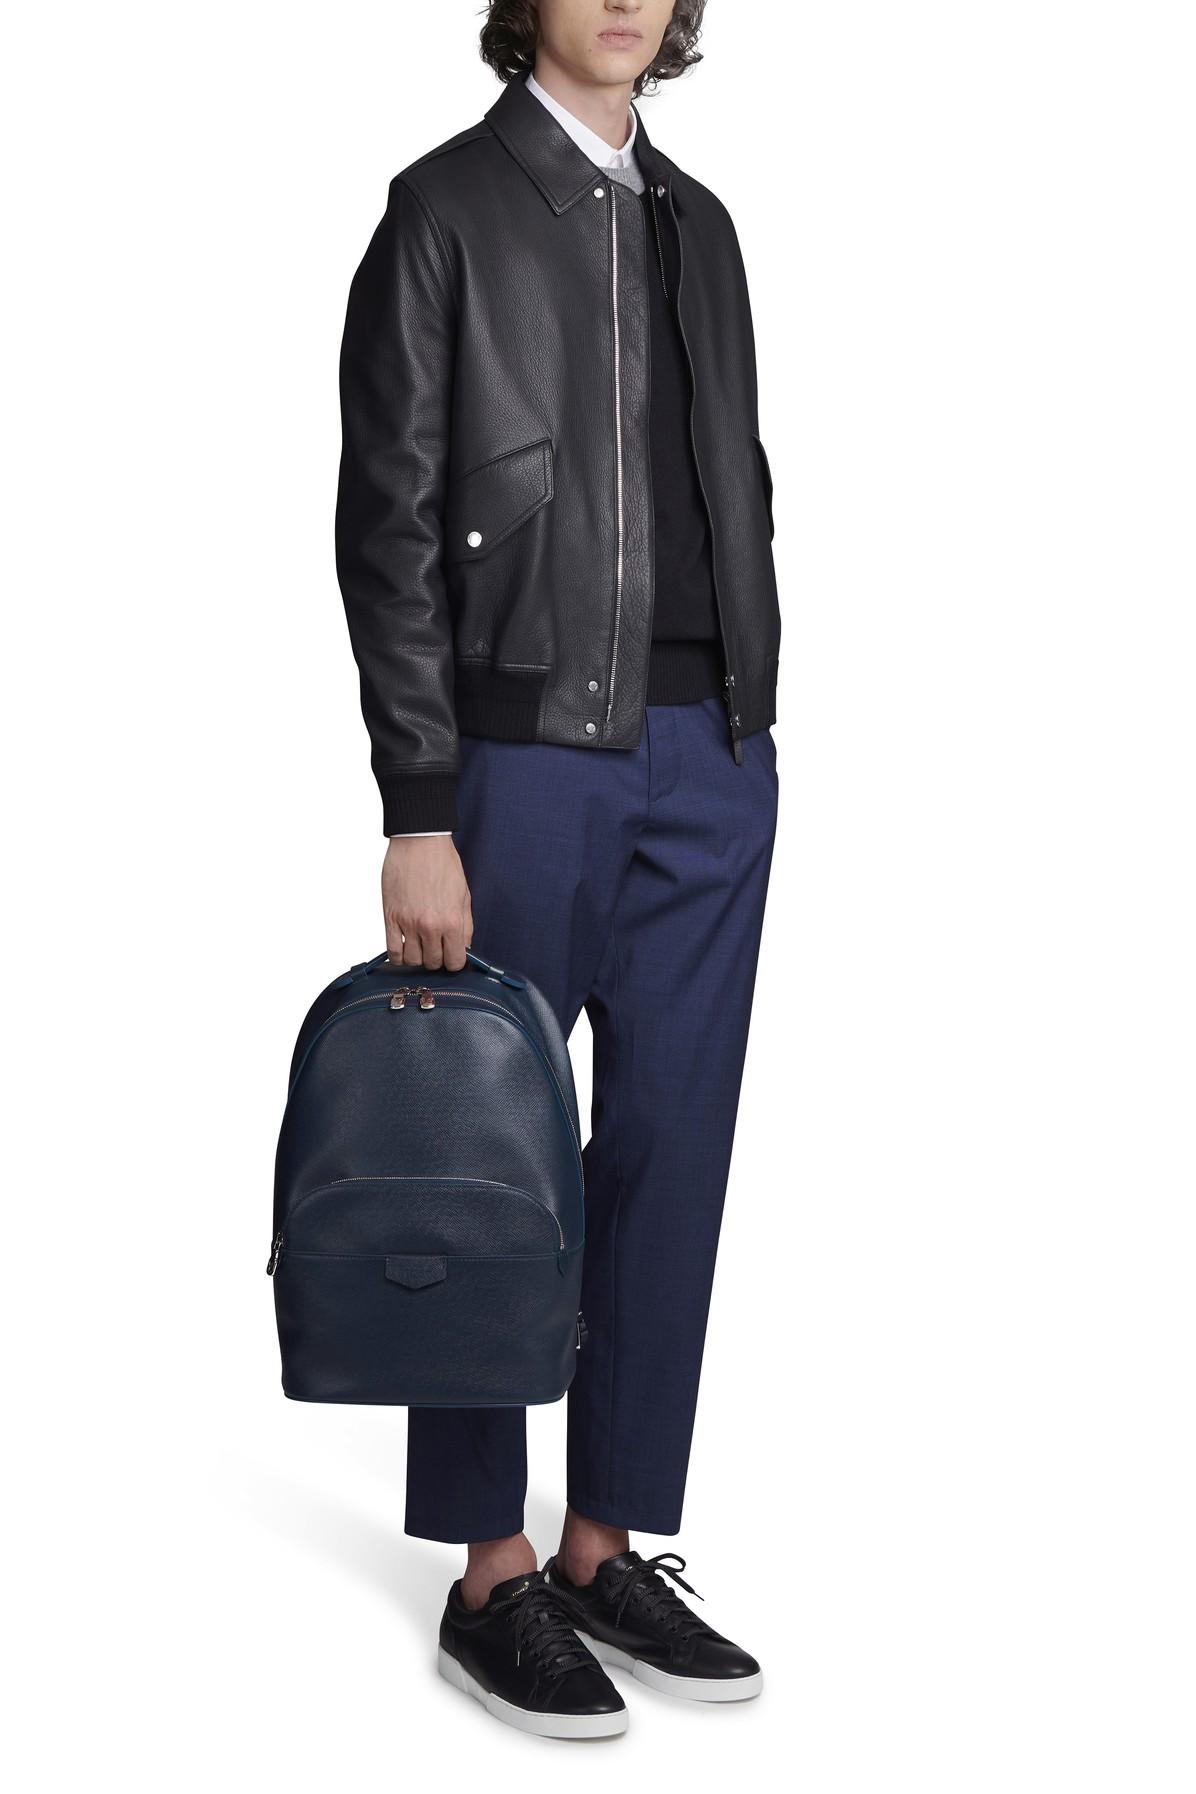 Louis Vuitton Anton Taiga Black Briefcase men's bag